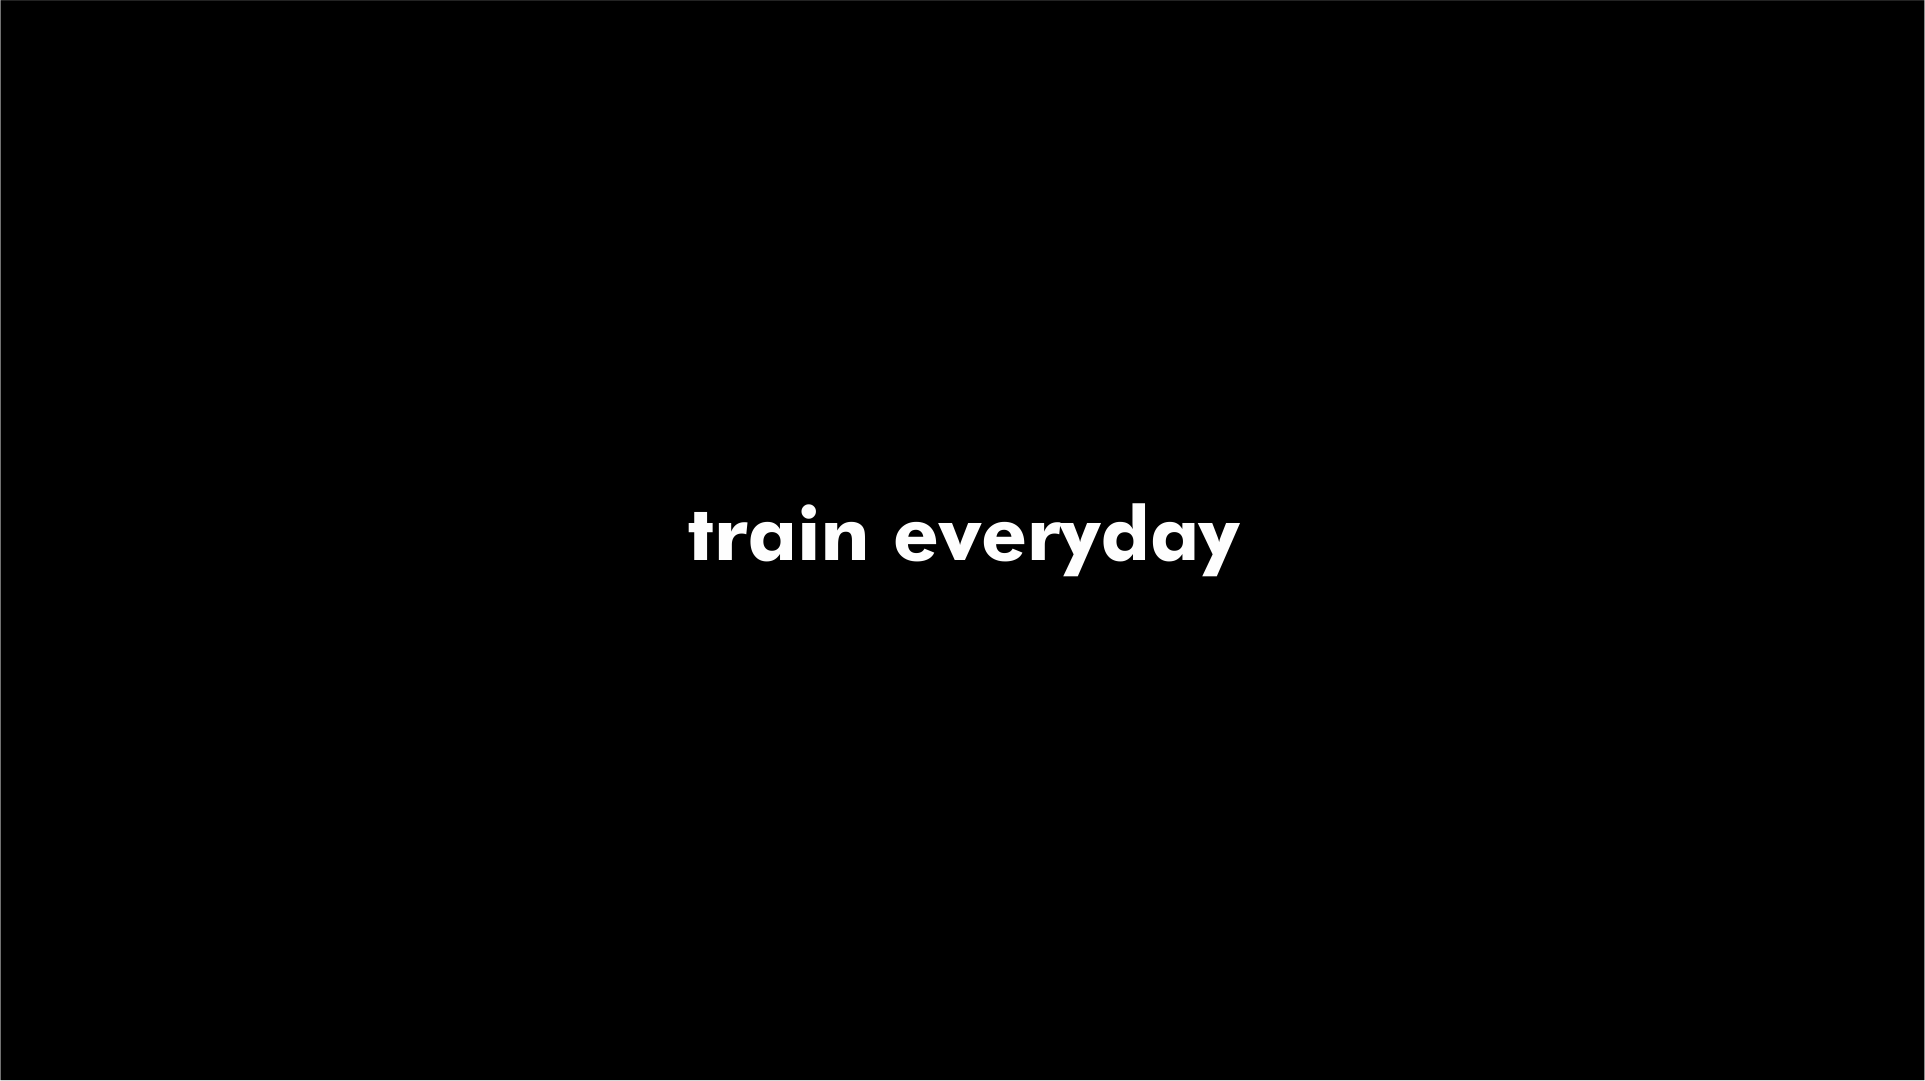 Train everyday